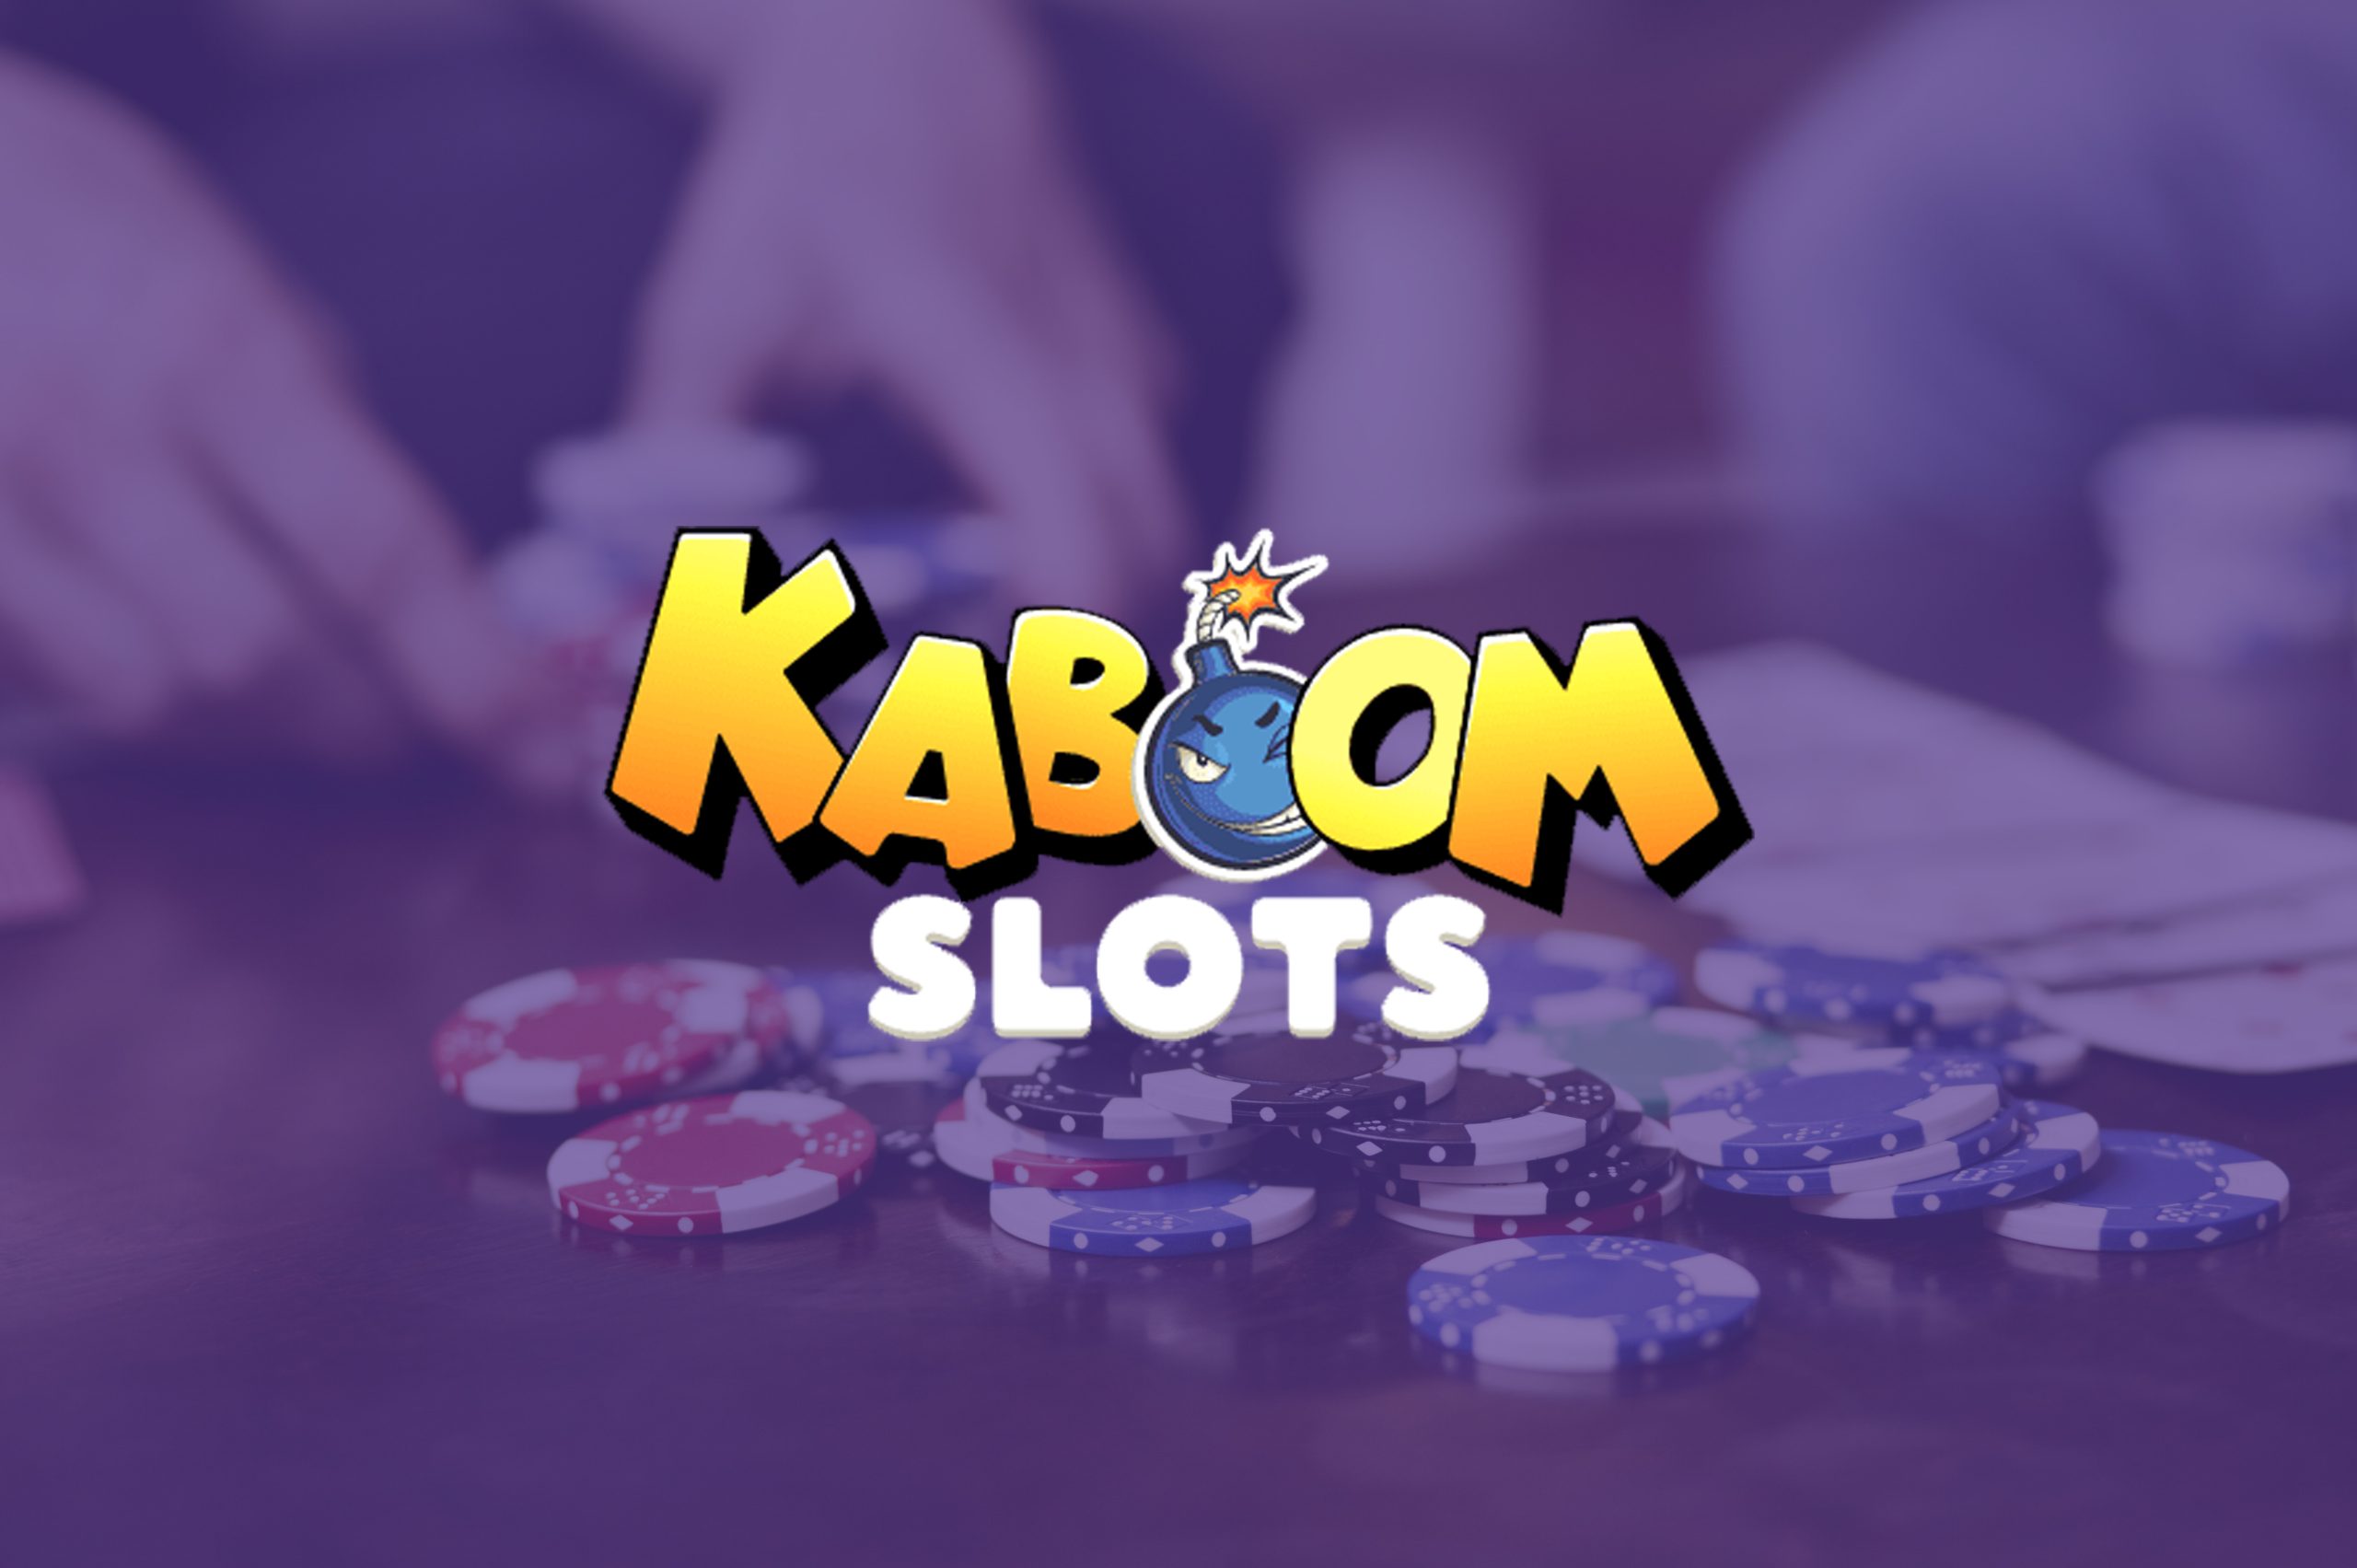 Kaboom Slots Casino Reviews